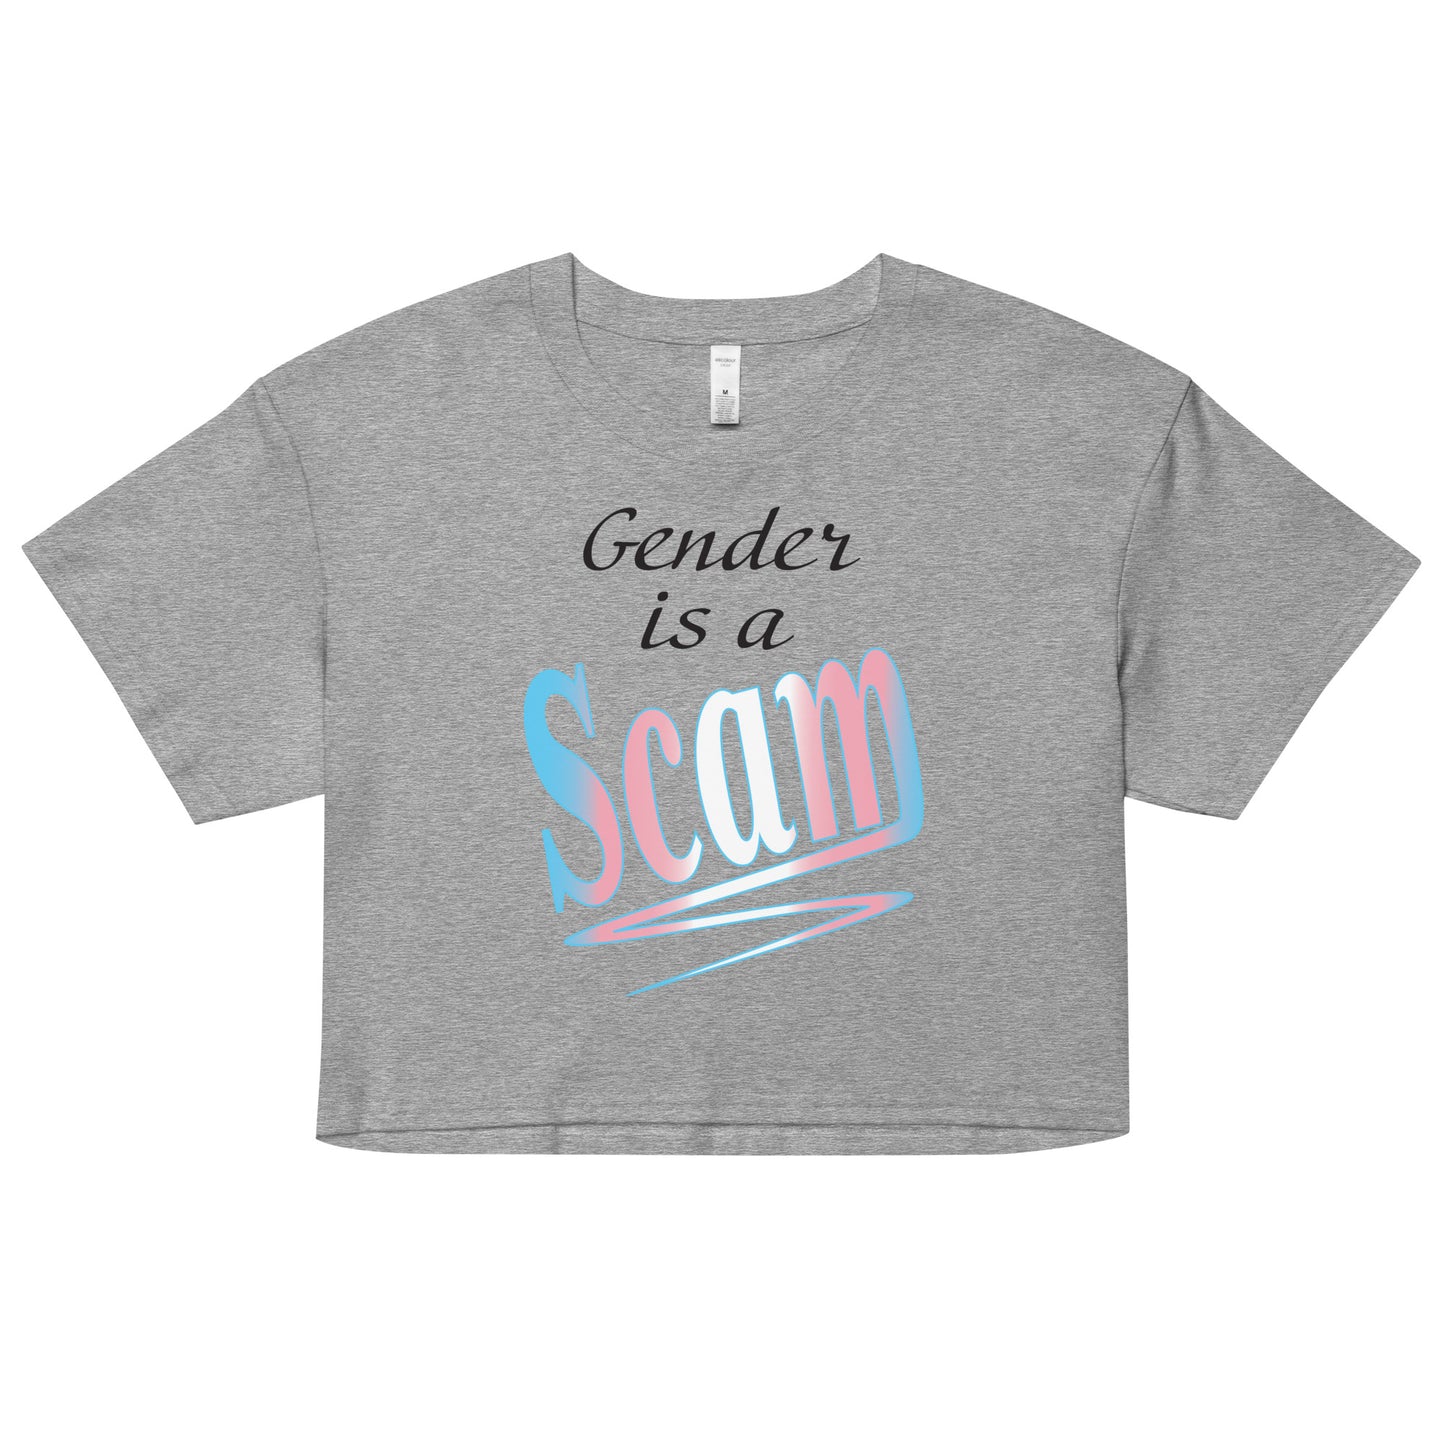 Gender Scam Women’s crop top